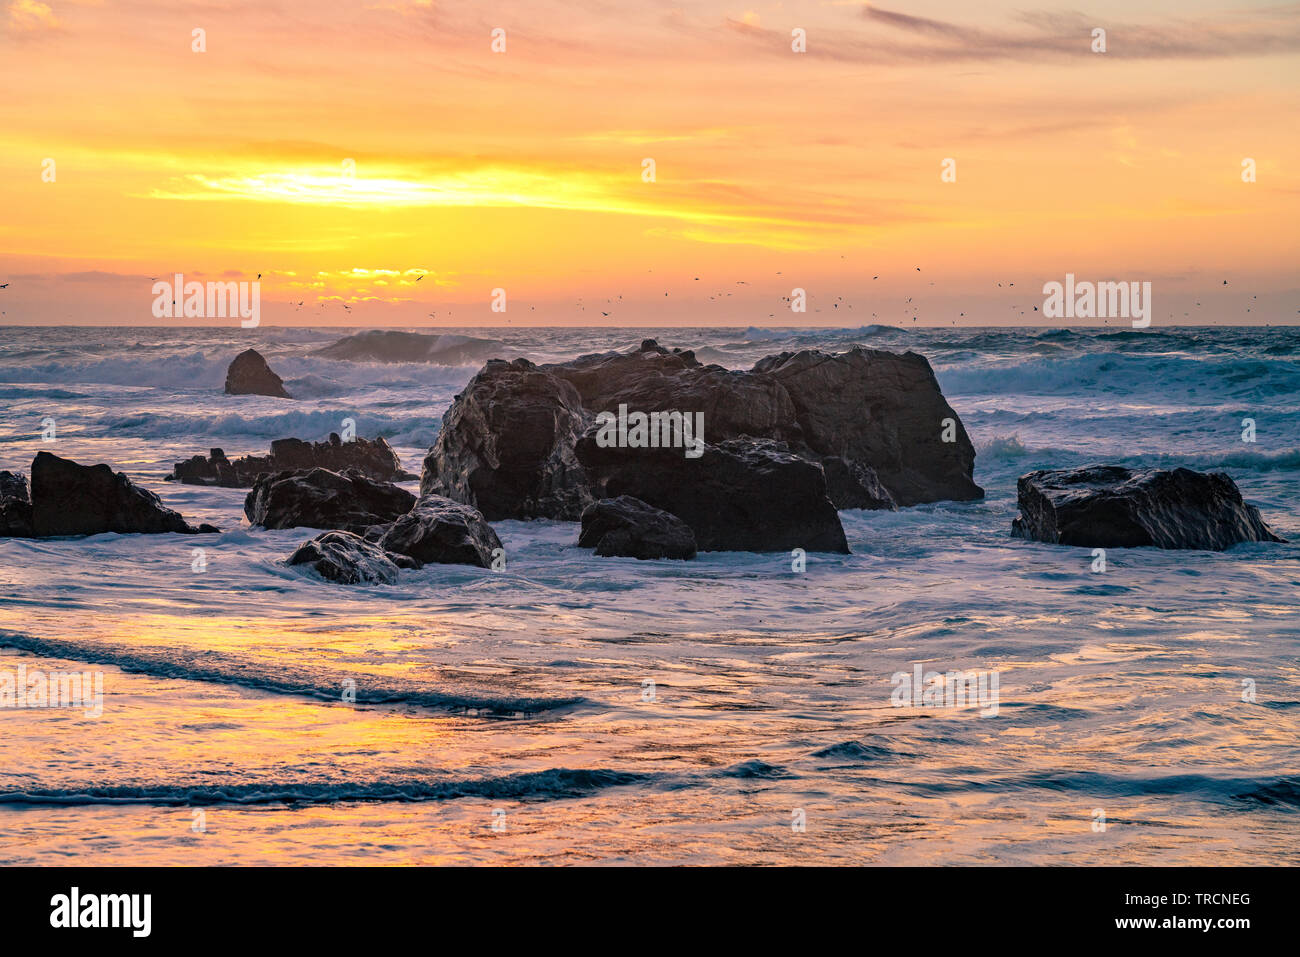 Big Sur, Kalifornien - schönen Sonnenuntergang am California Beach mit großen Wellen, die über Felsen und eine Schar Vögel in der Ferne fliegen. Stockfoto